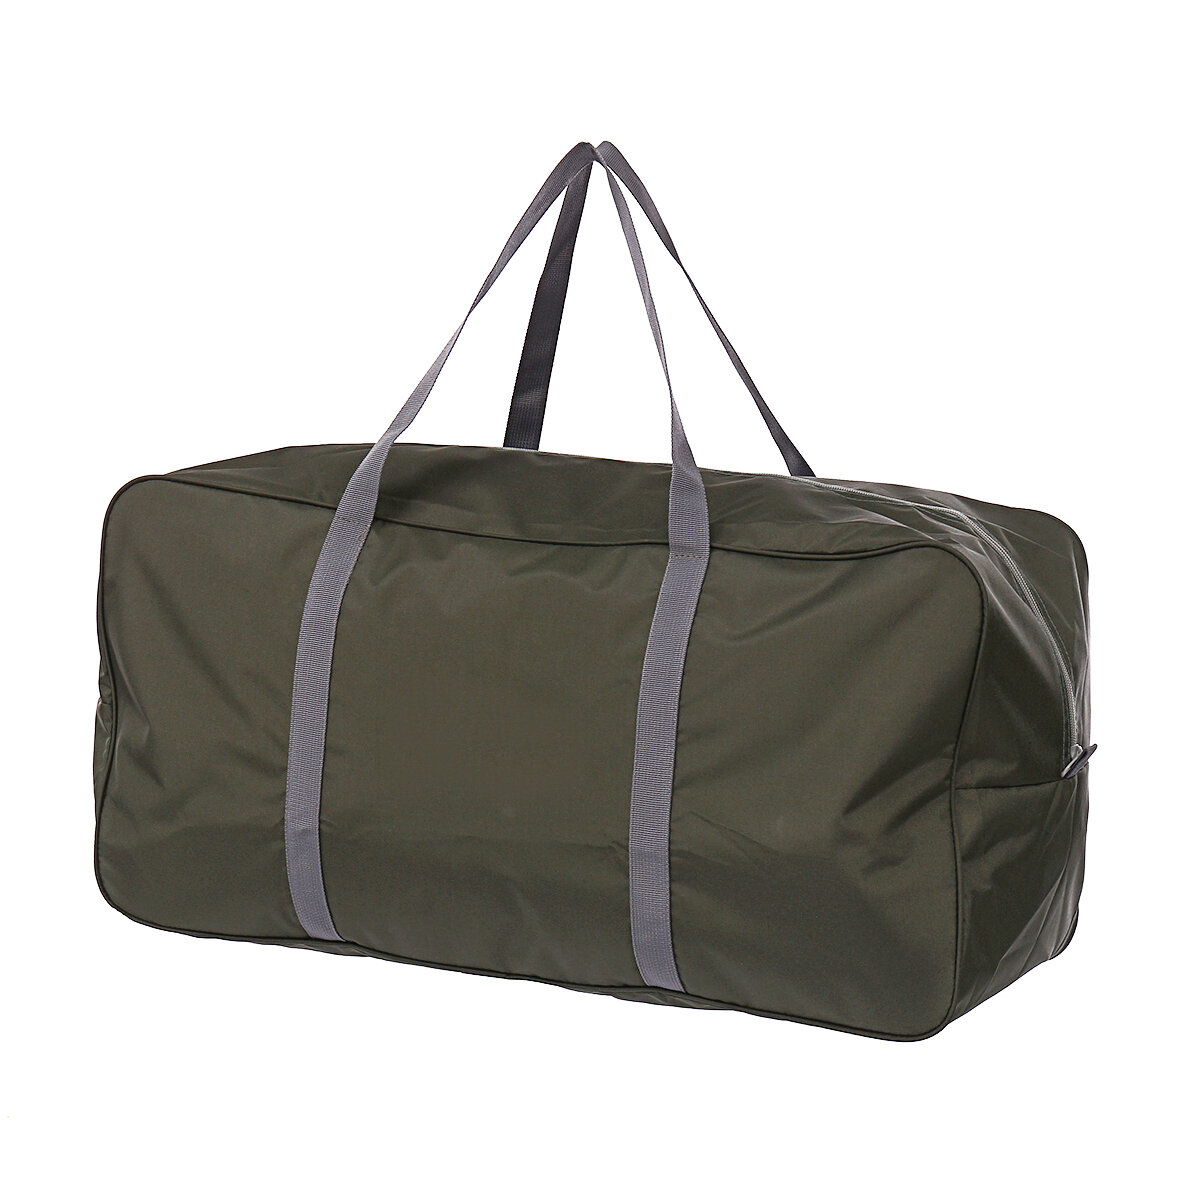 Εξωτερική τσάντα 45L / 21L Oxford μεγάλη τσάντα Duffle ταξιδίου κατασκηνώσεων σκηνές αποθήκευσης αποσκευών τσάντα αθλητικών κινητής τσάντας αδιάβροχη